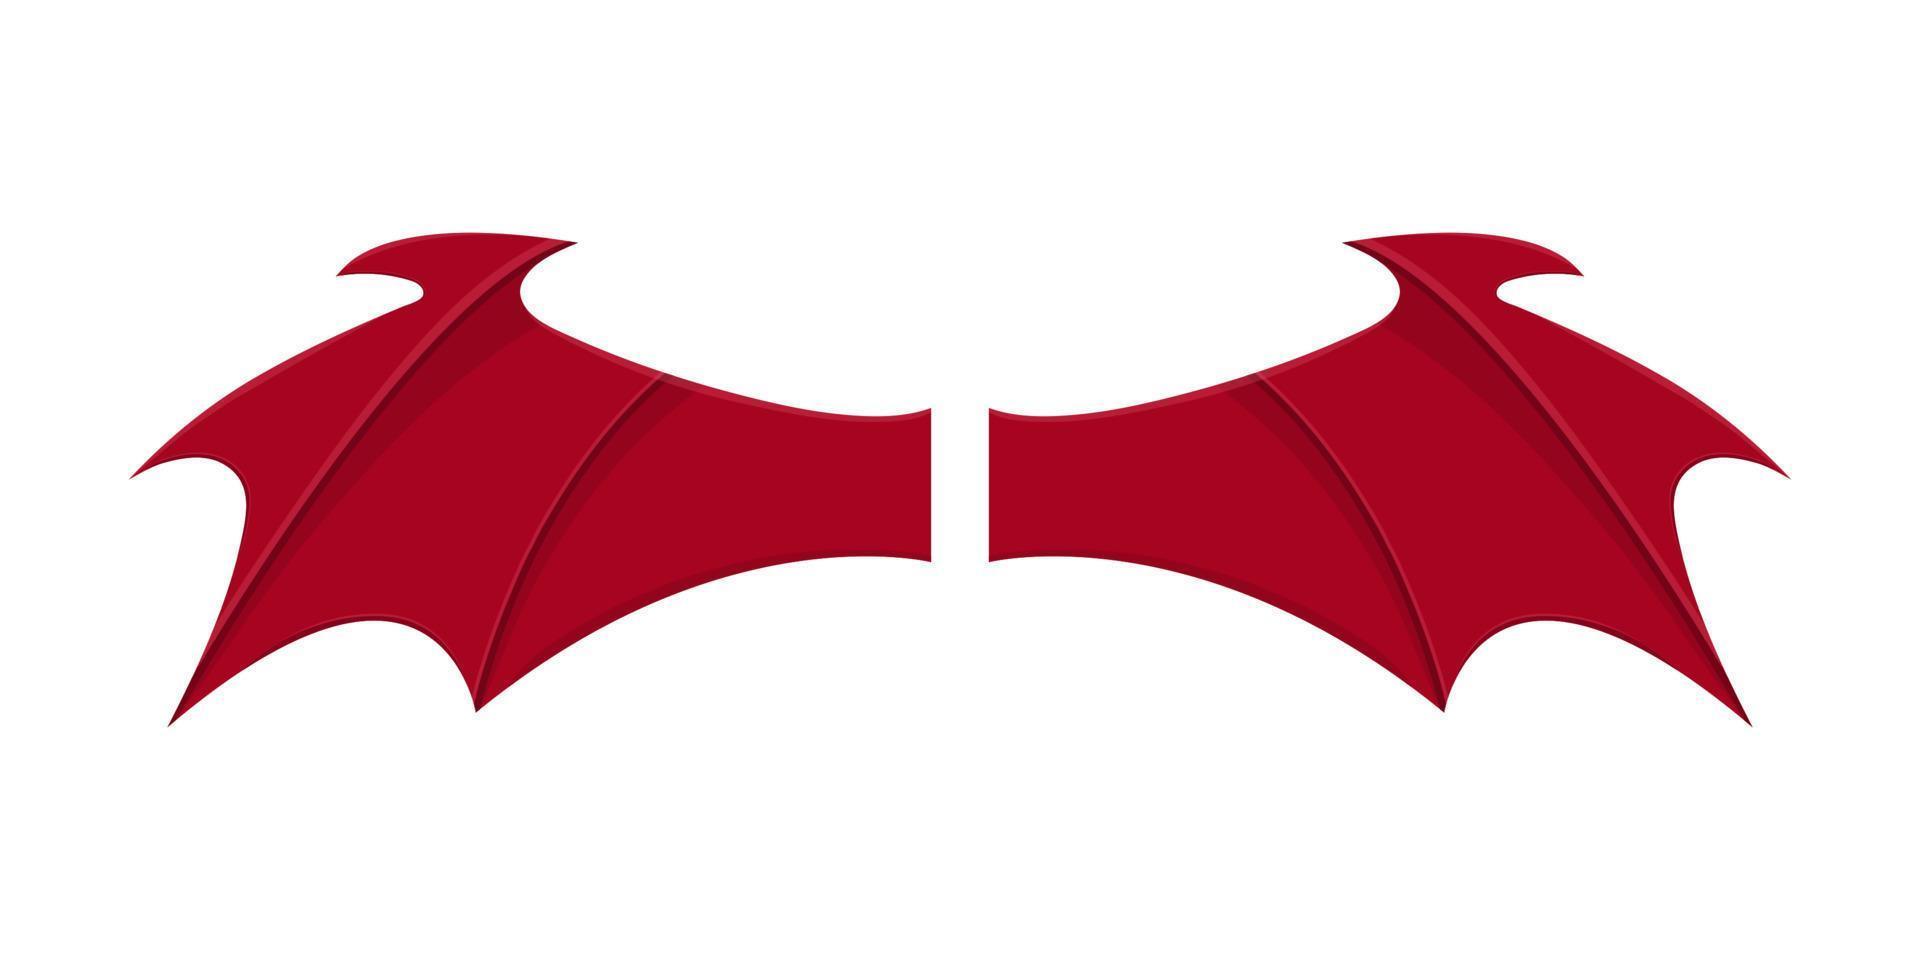 ali rosse del diavolo isolate su priorità bassa bianca. stile cartone animato. illustrazione vettoriale pulita e moderna per design, web.